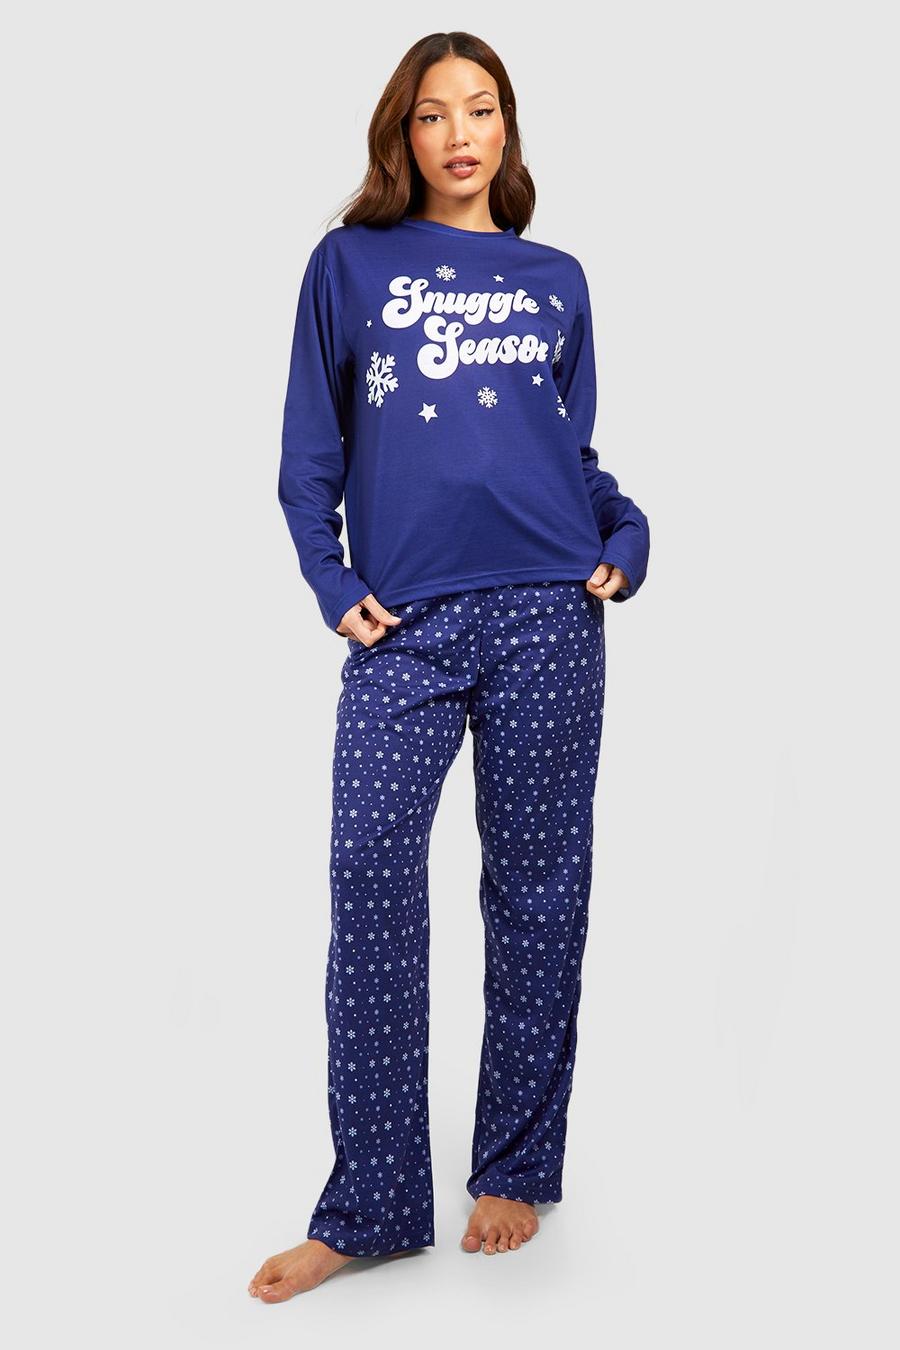 Set pigiama Tall Snuggle Season, Blue image number 1